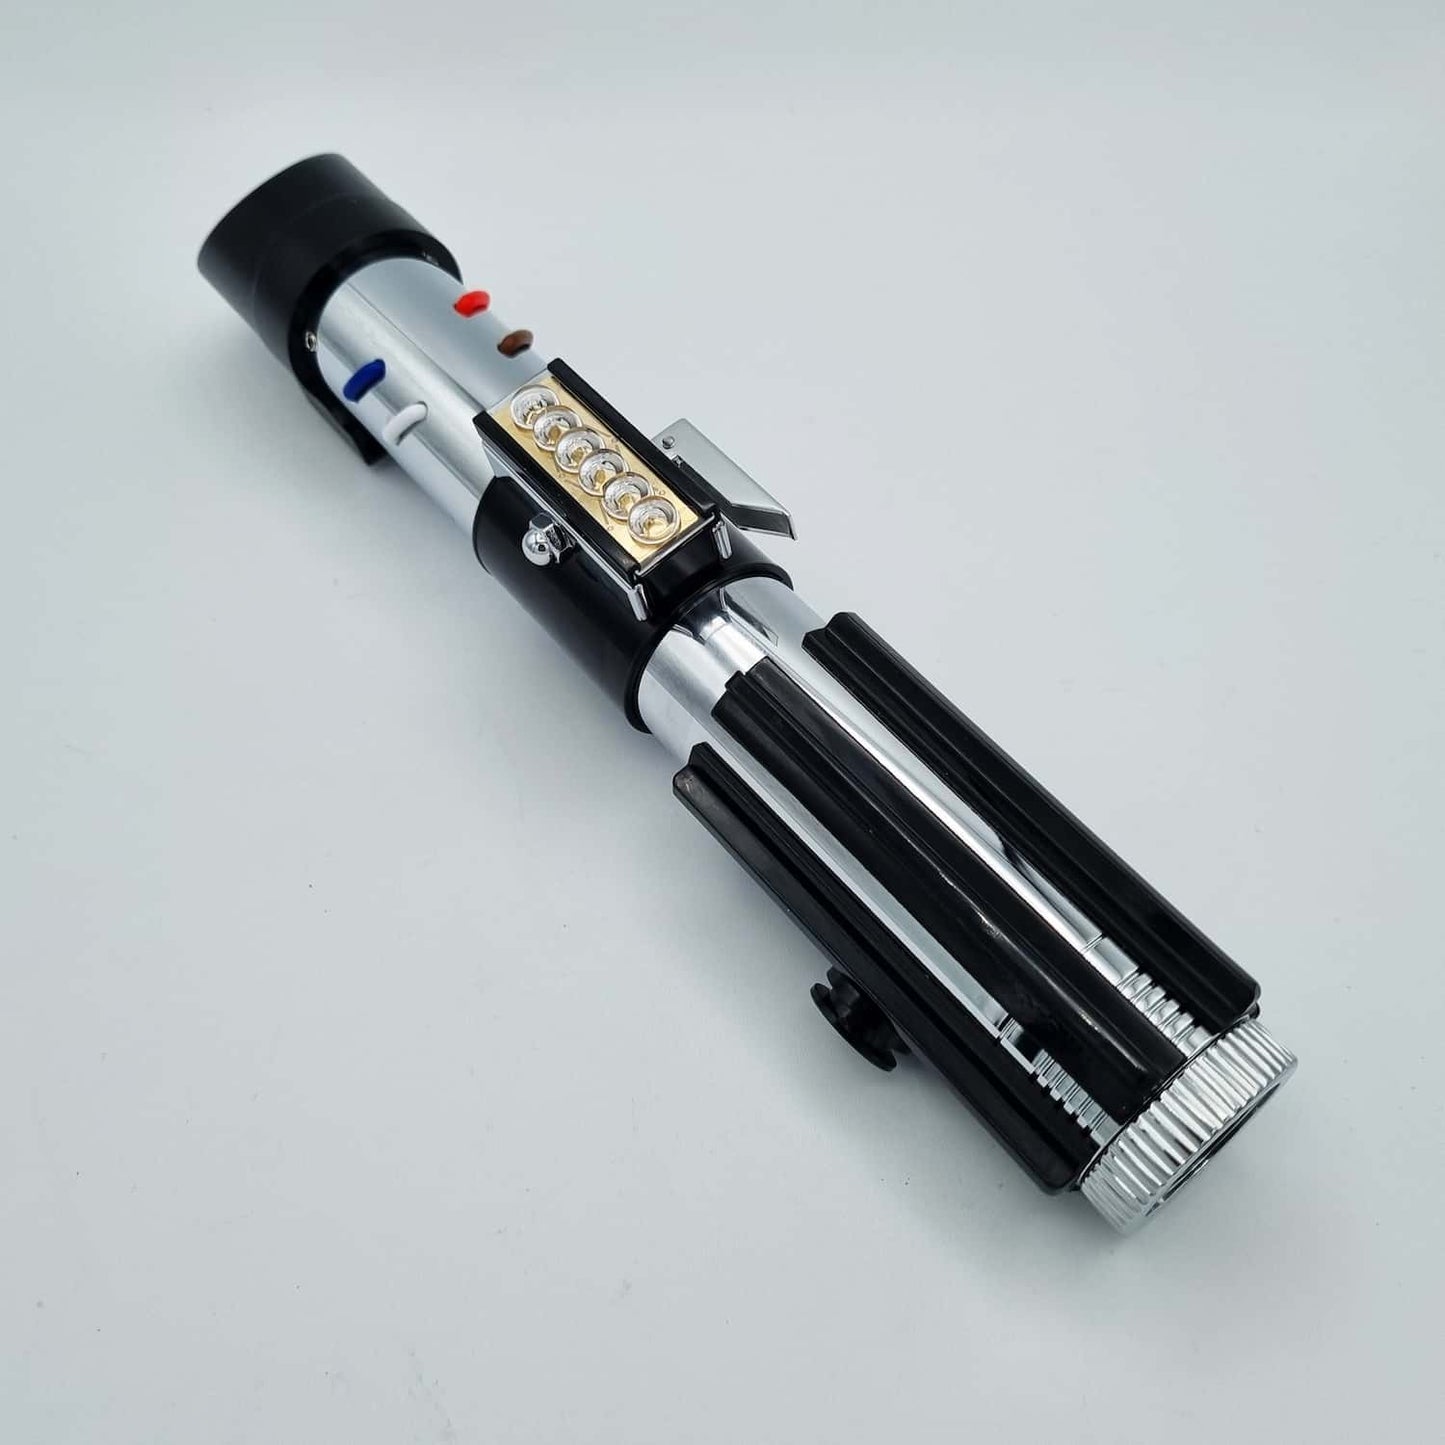 Neopixel Lightsaber - Model Vader